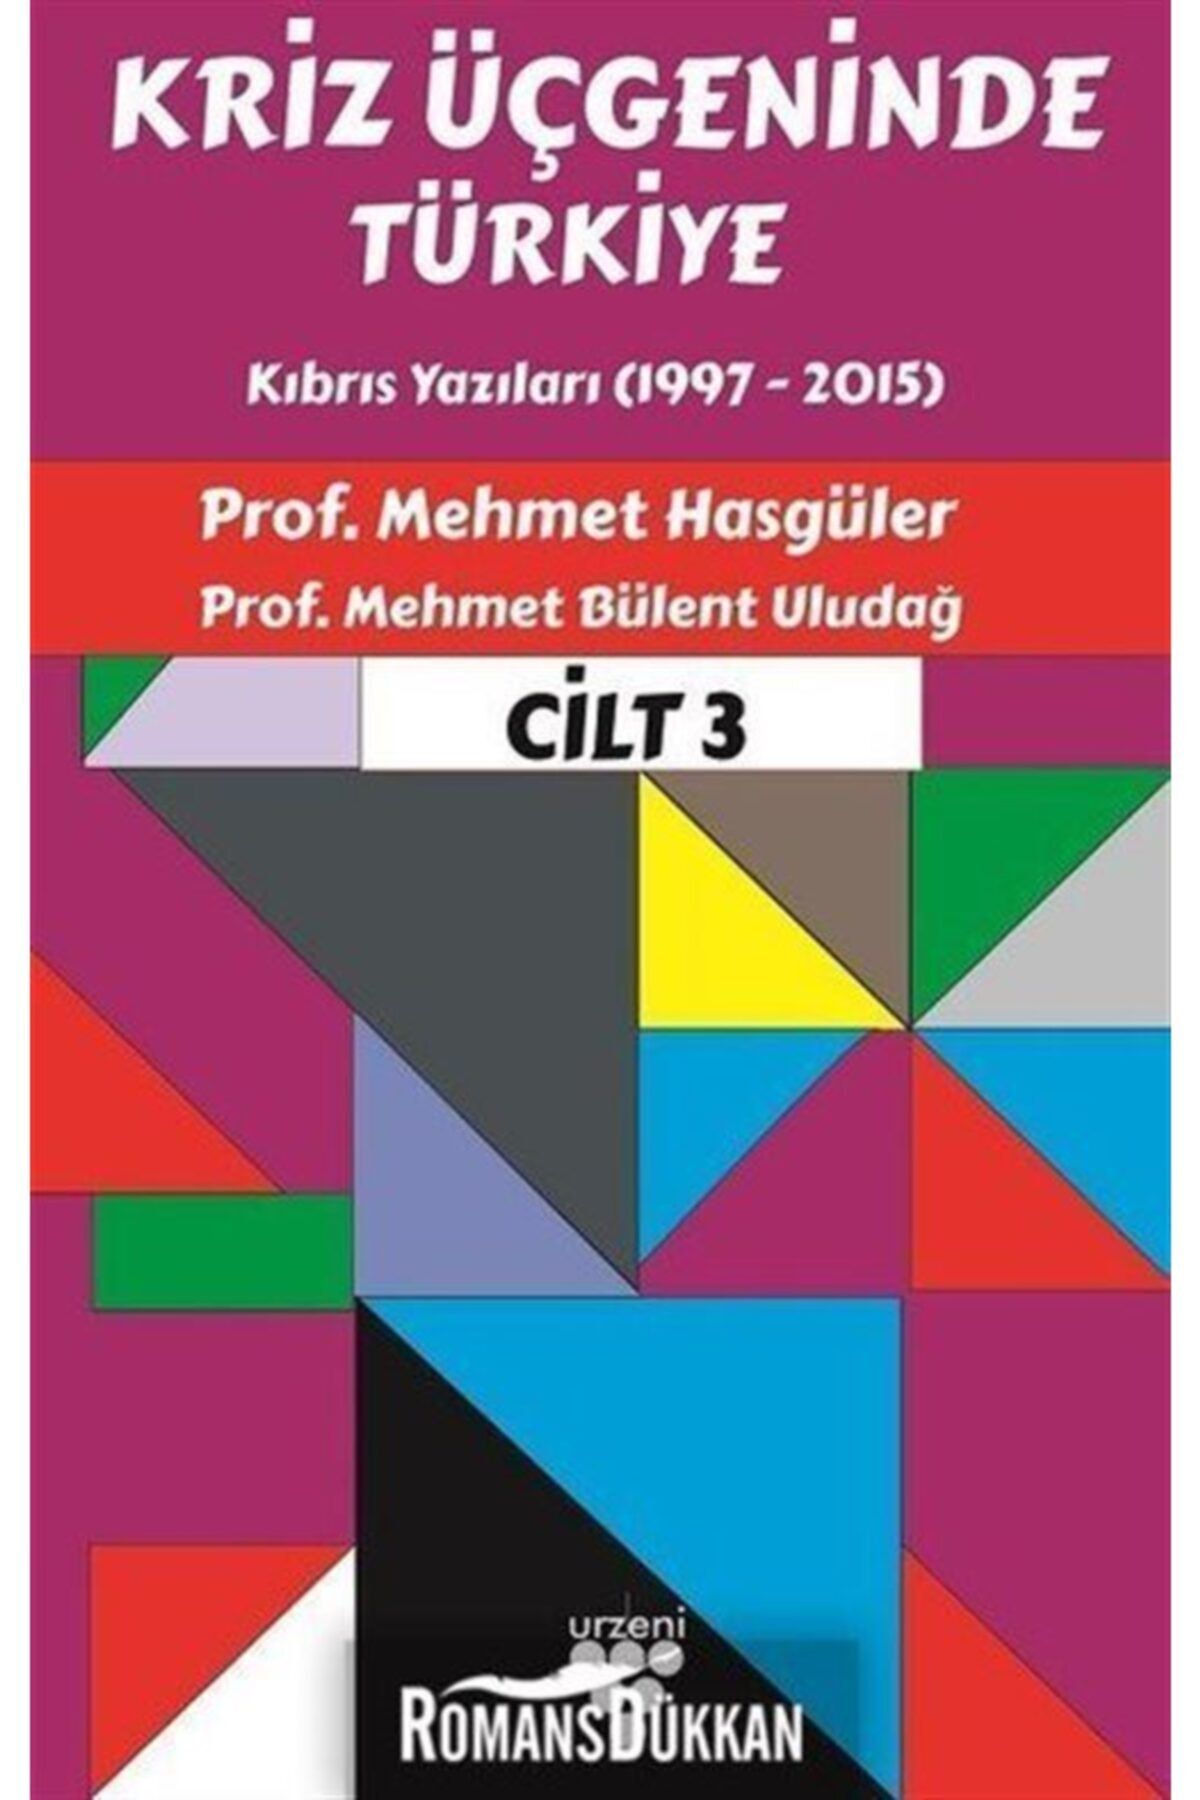 Urzeni Yayıncılık Kriz Üçgeninde Türkiye Cilt 3 Uyumlu Mehmet Hasgüler & M. Bülent Uludağ Kitabı